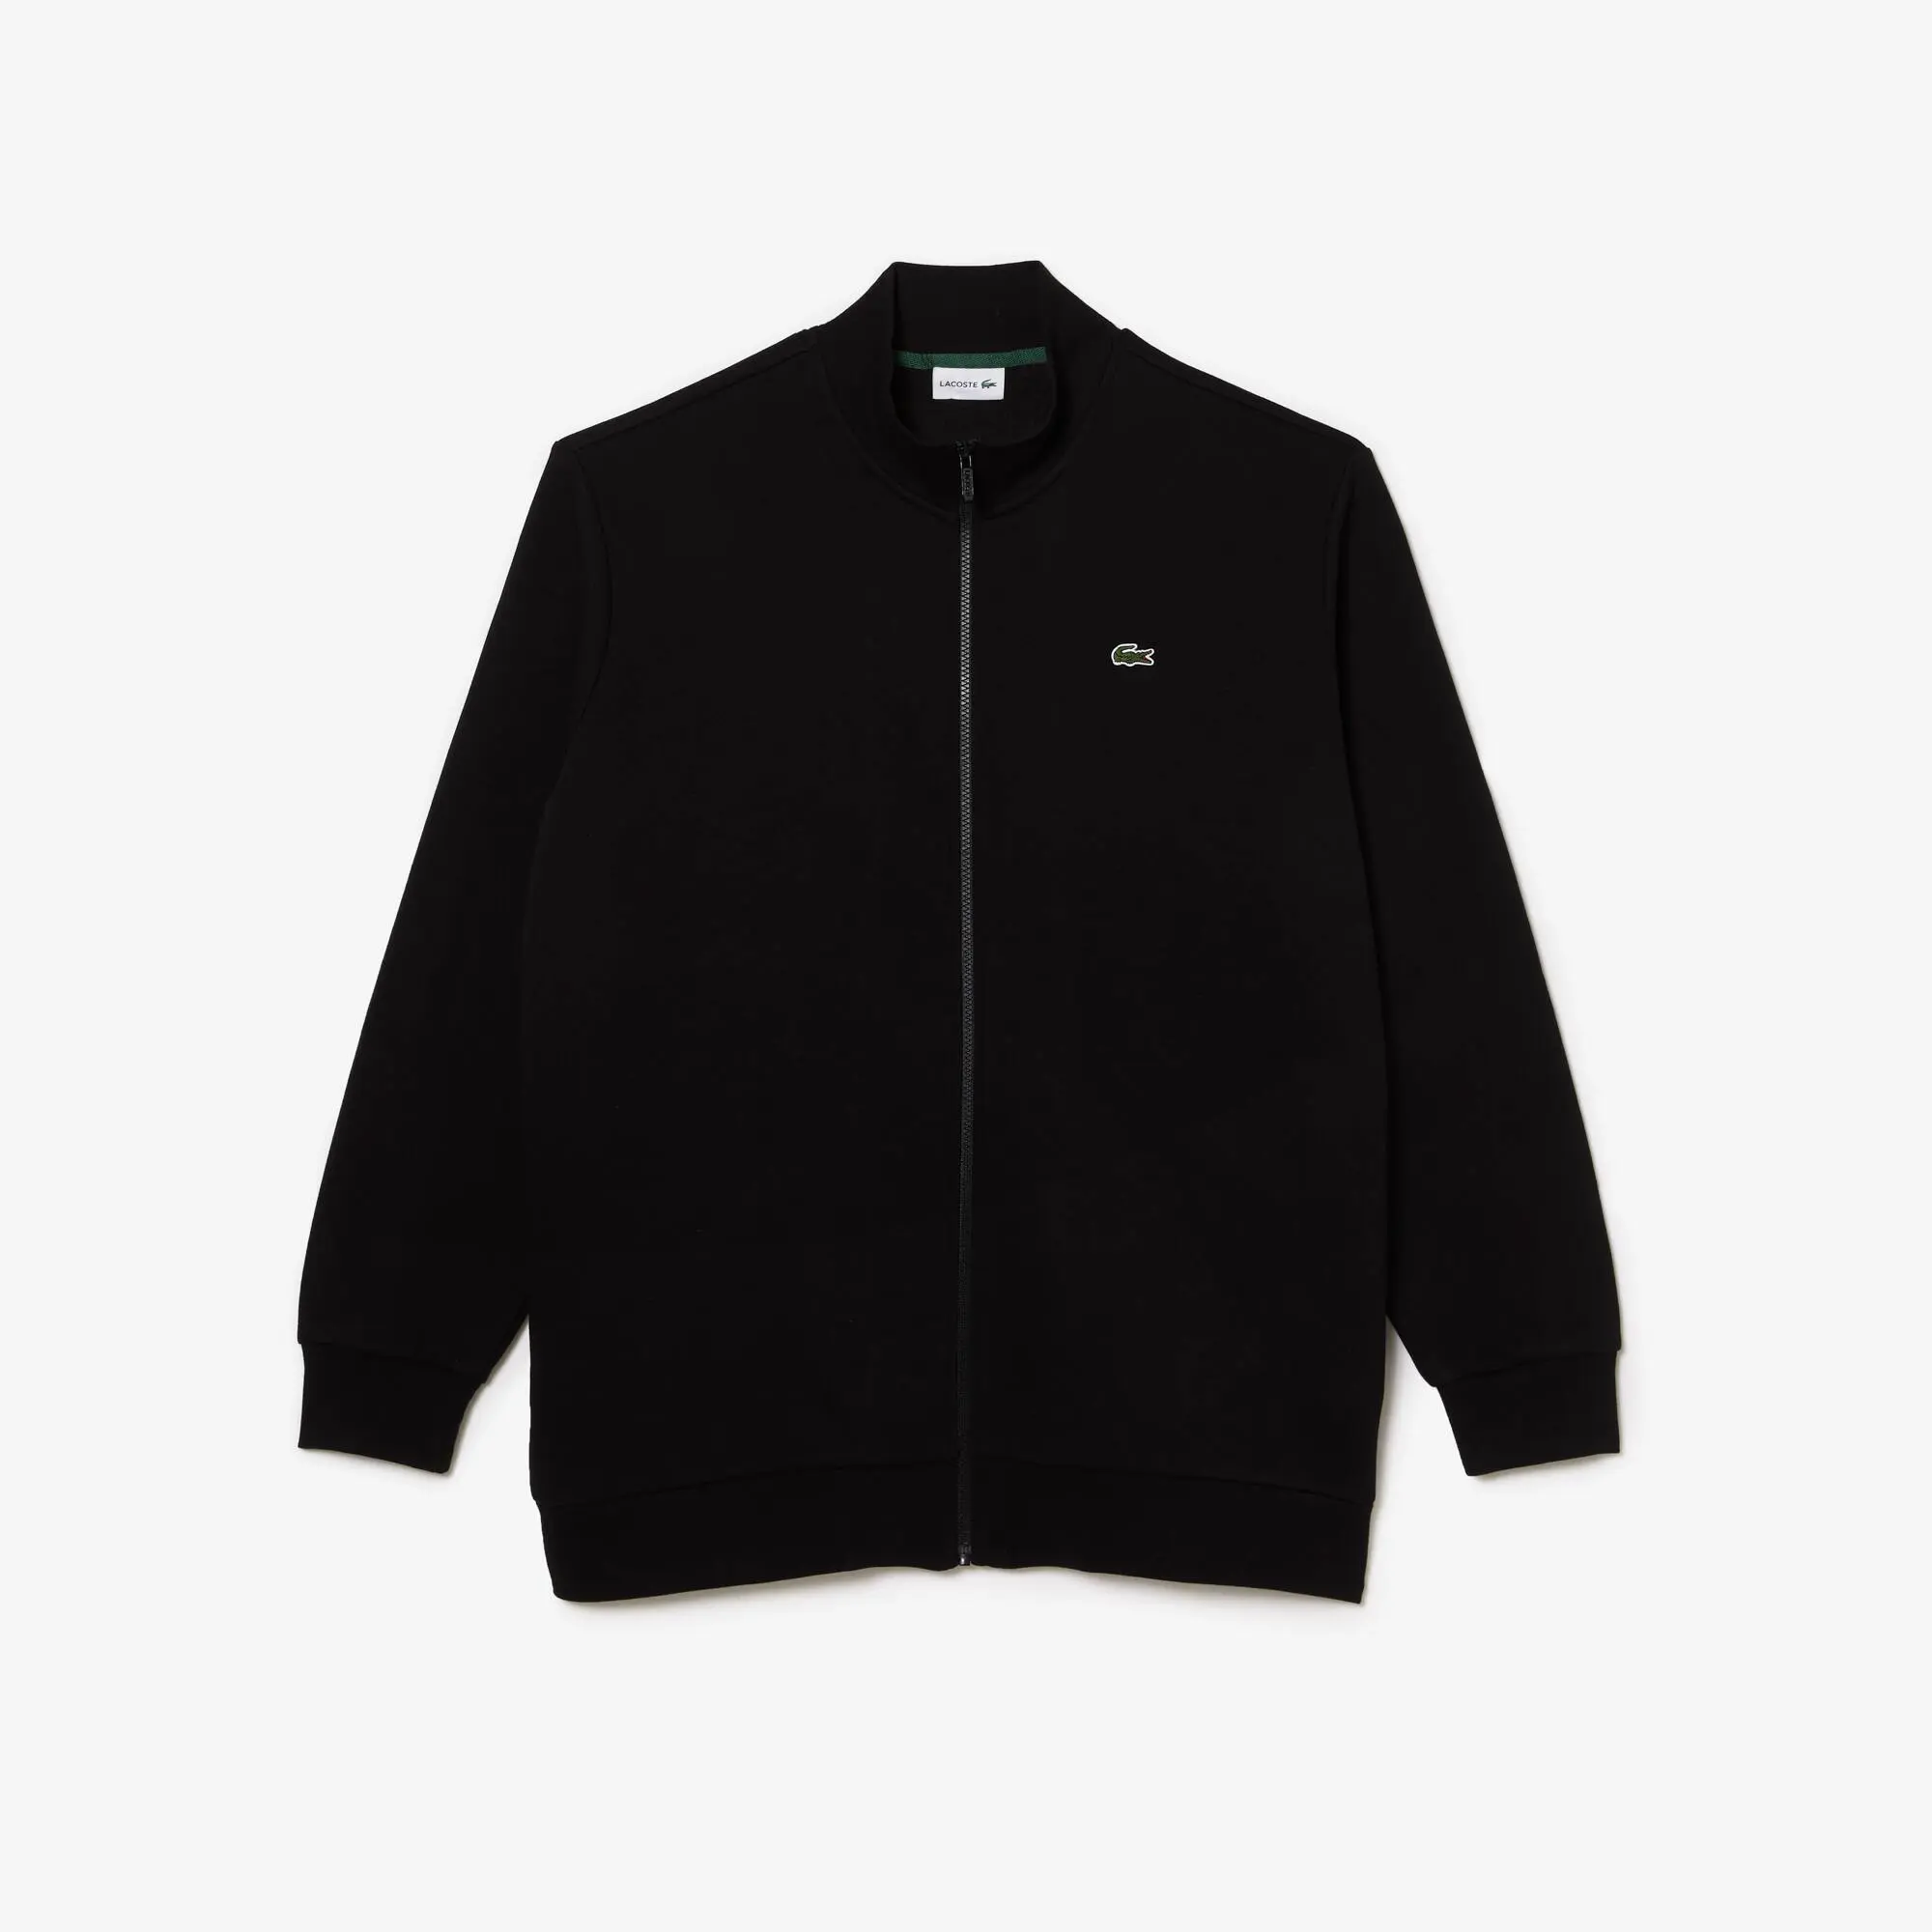 Lacoste Men’s Big Fit Cotton Fleece Zip-Up Sweatshirt. 2